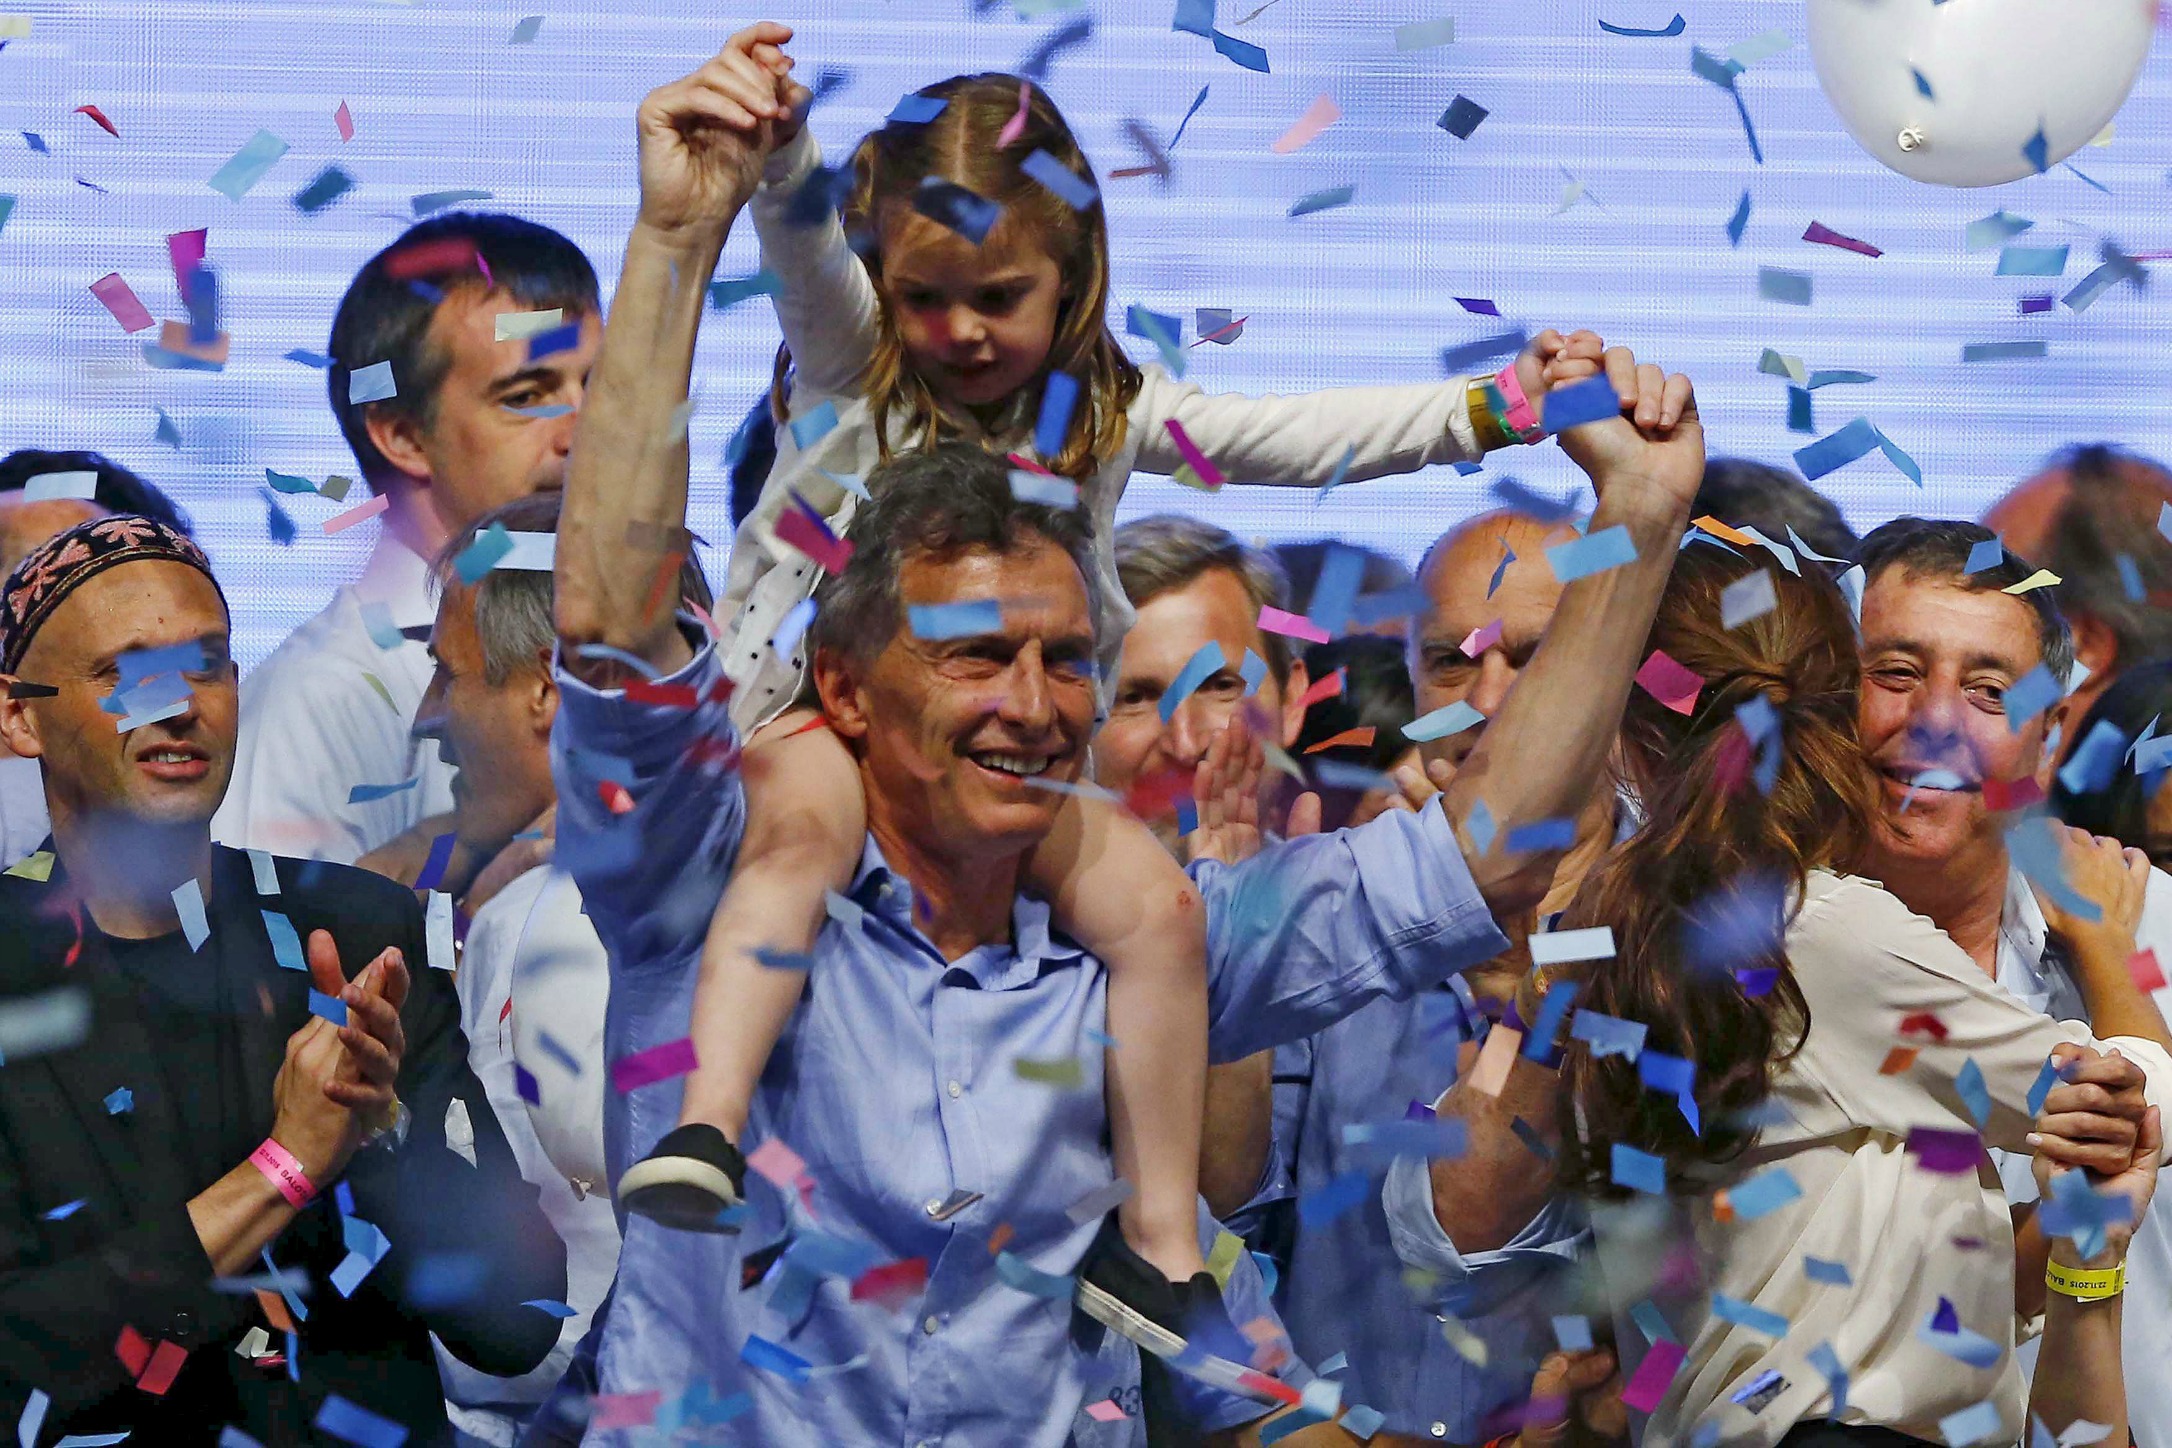 Macri ends twelve years of Kirchner rule